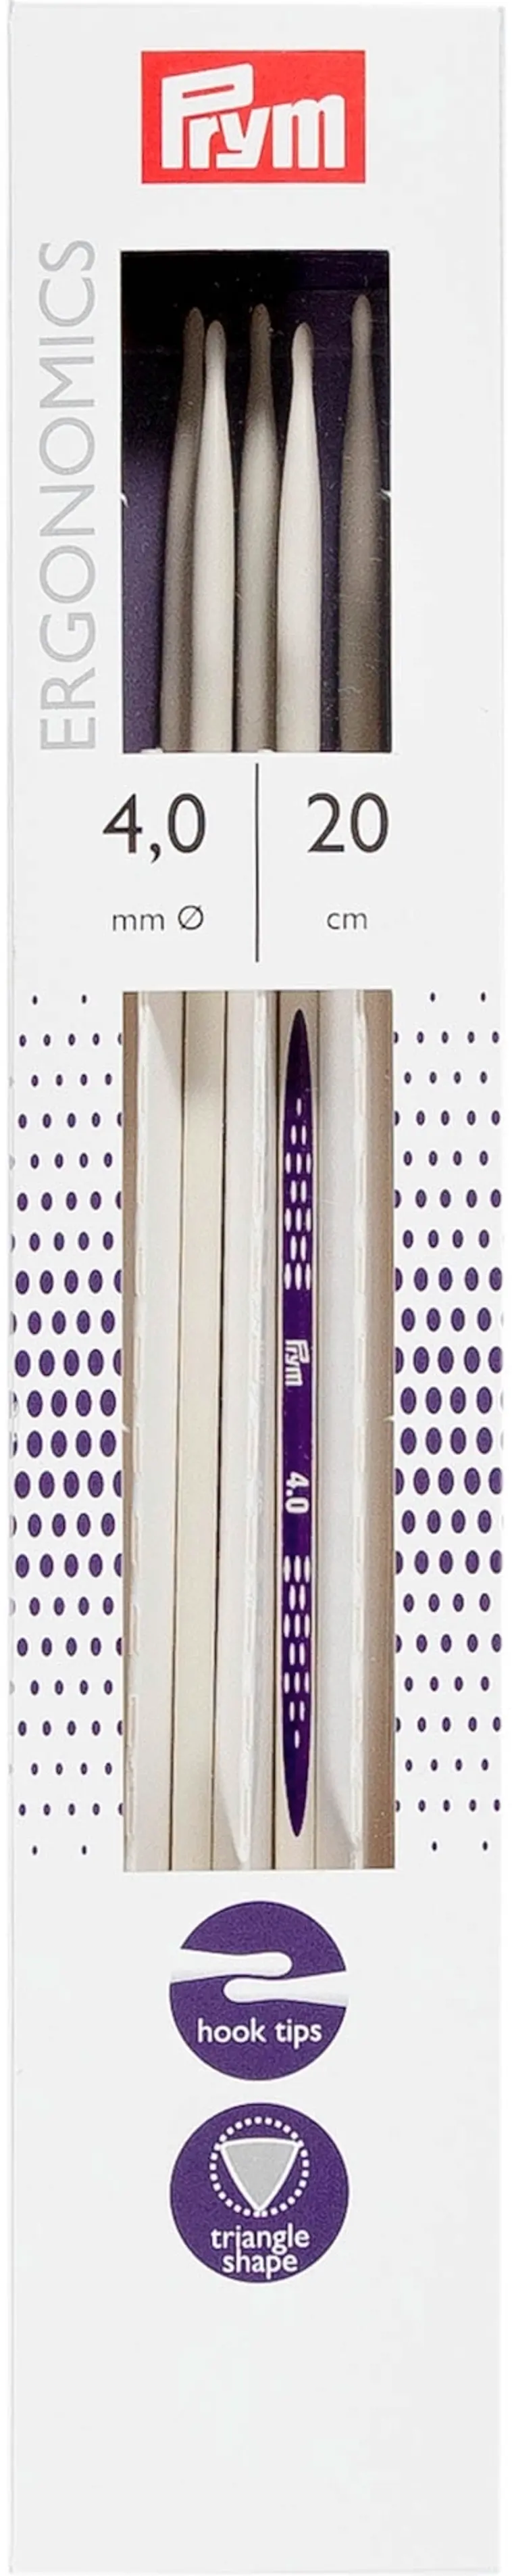 Prym Sukkapuikko Ergonominen 20cm - 4mm | Prisma verkkokauppa